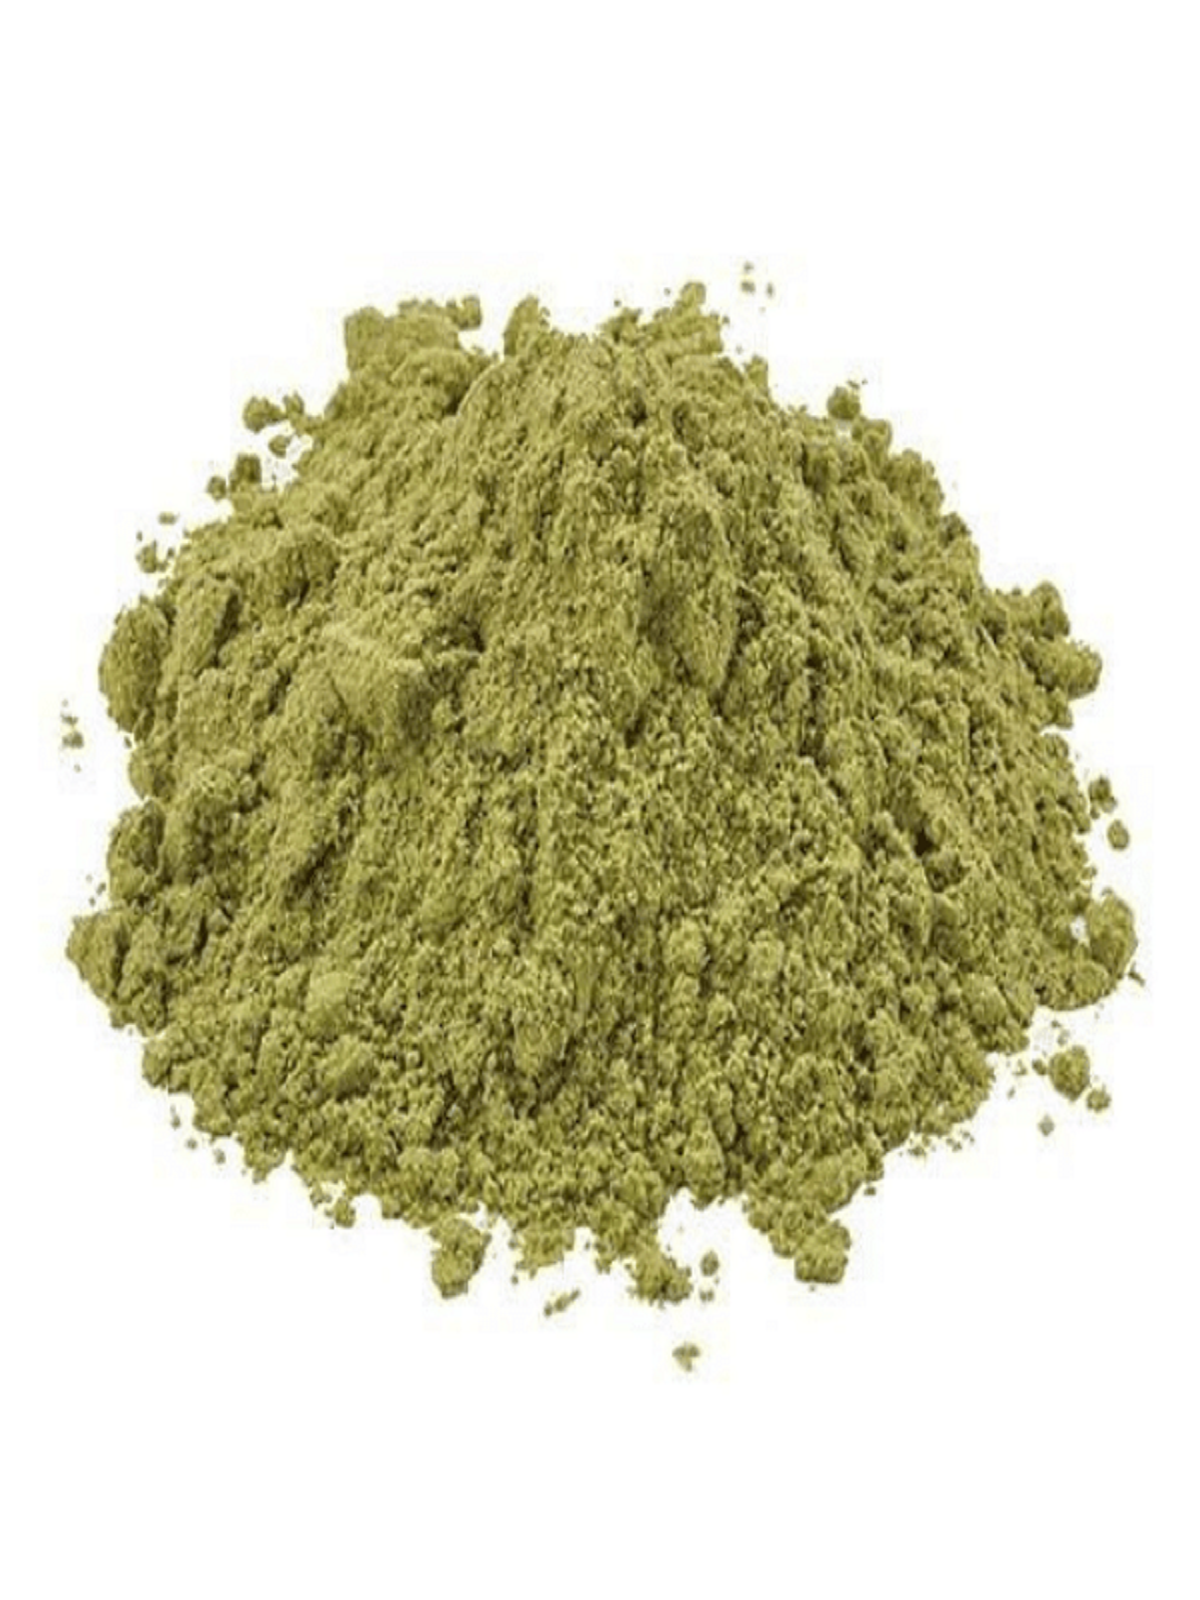 Buy best quality elachi/cardamon powder online from farmonics